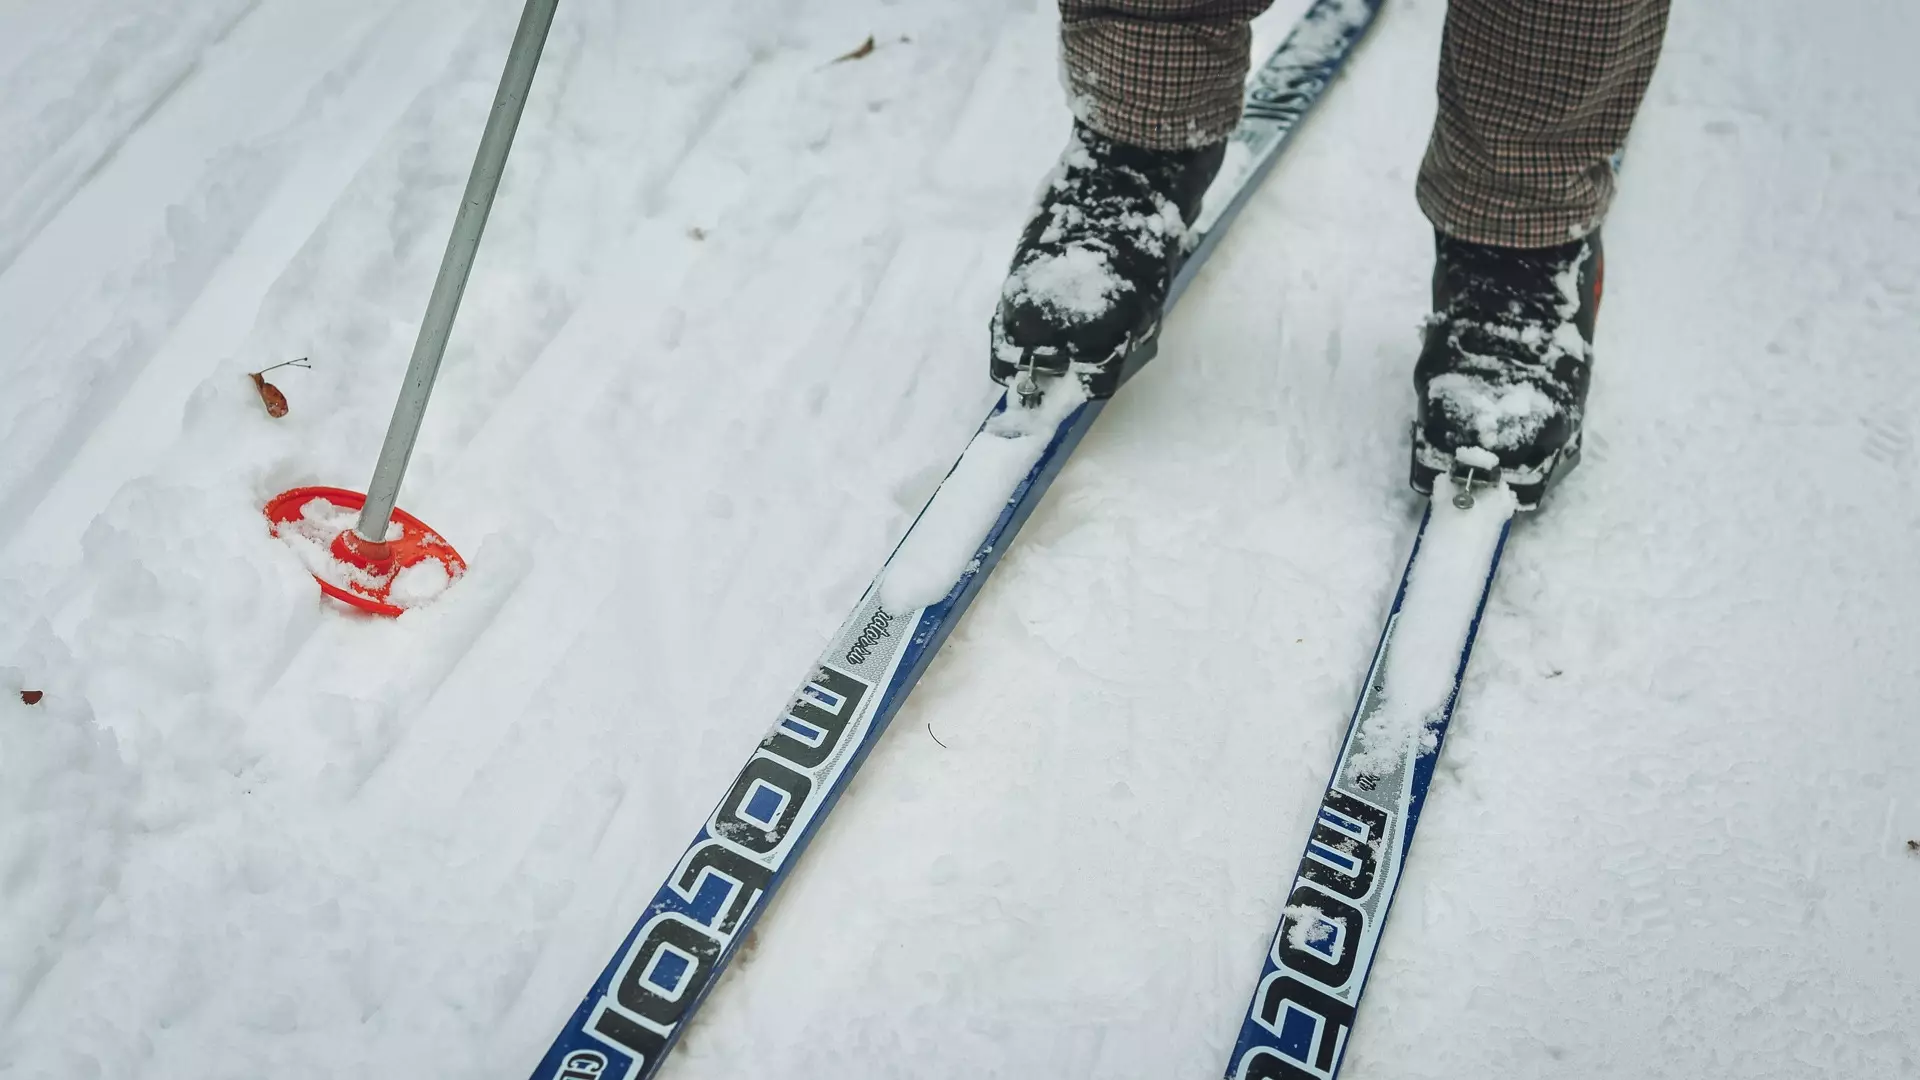 Эн+ ждет нижегородцев на спортивном фестивале «На лыжи!» уже в это воскресенье